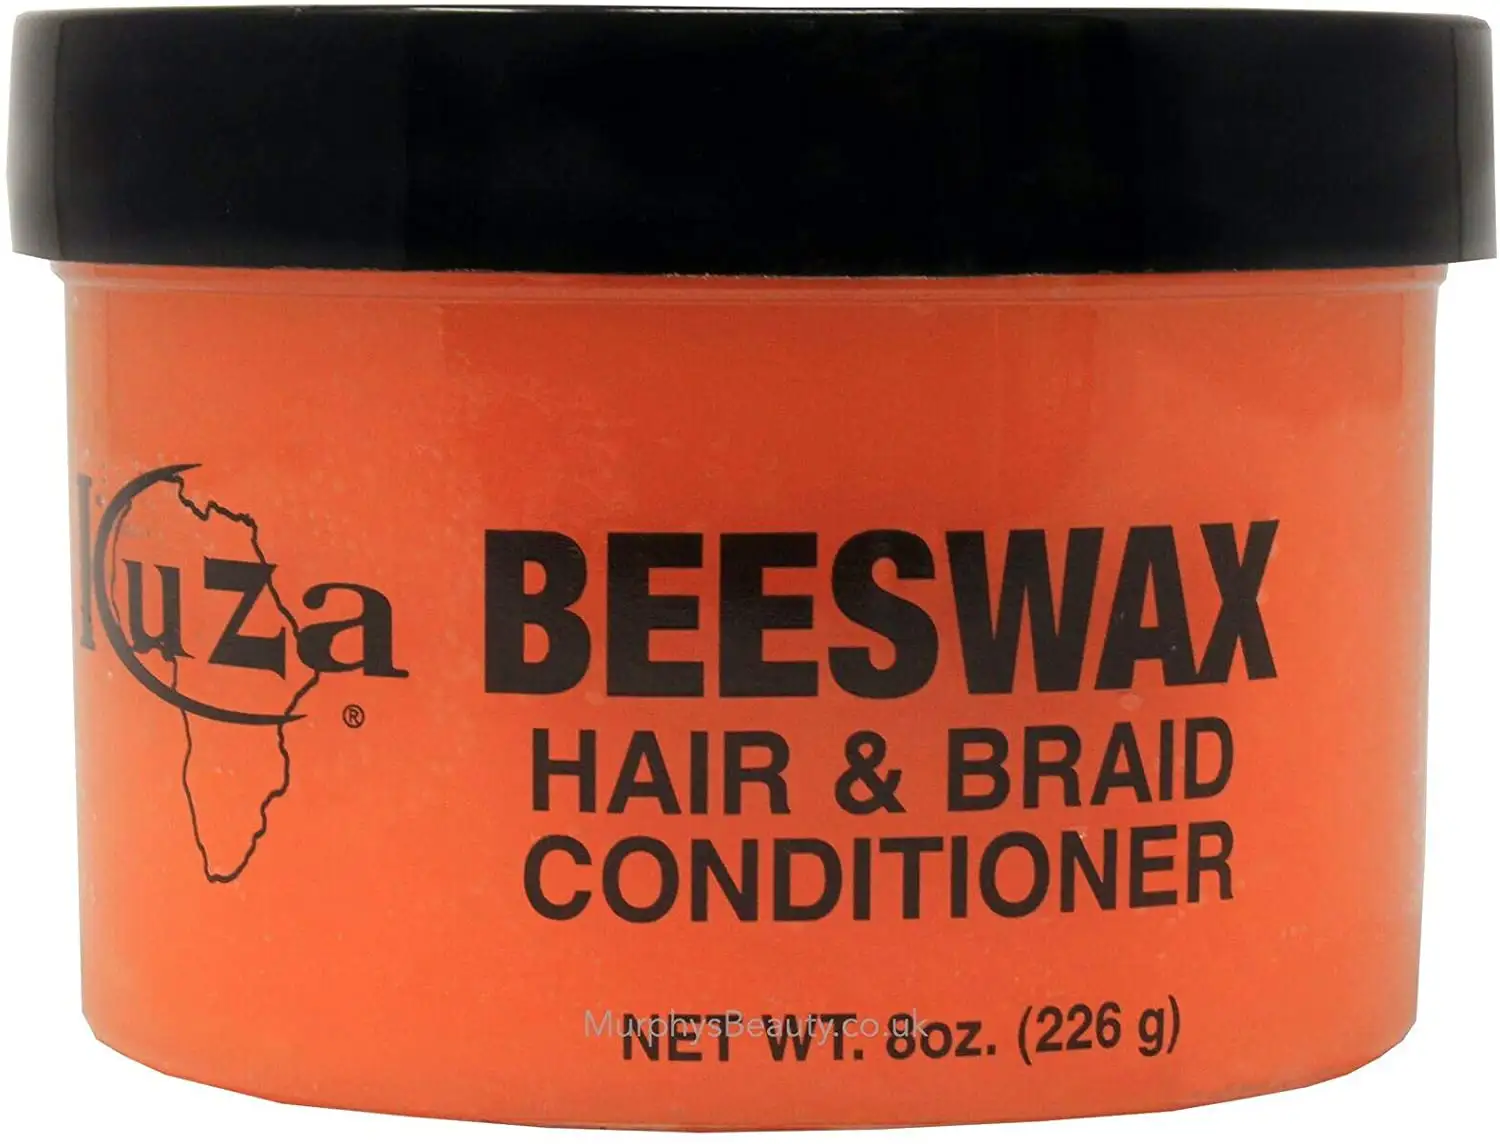 Kuza beeswax apres shampooing pour cheveux et tresses 8 oz_4358. DIAYTAR SENEGAL - Où Chaque Produit est une Promesse de Qualité. Explorez notre boutique en ligne et choisissez des produits qui répondent à vos exigences élevées.